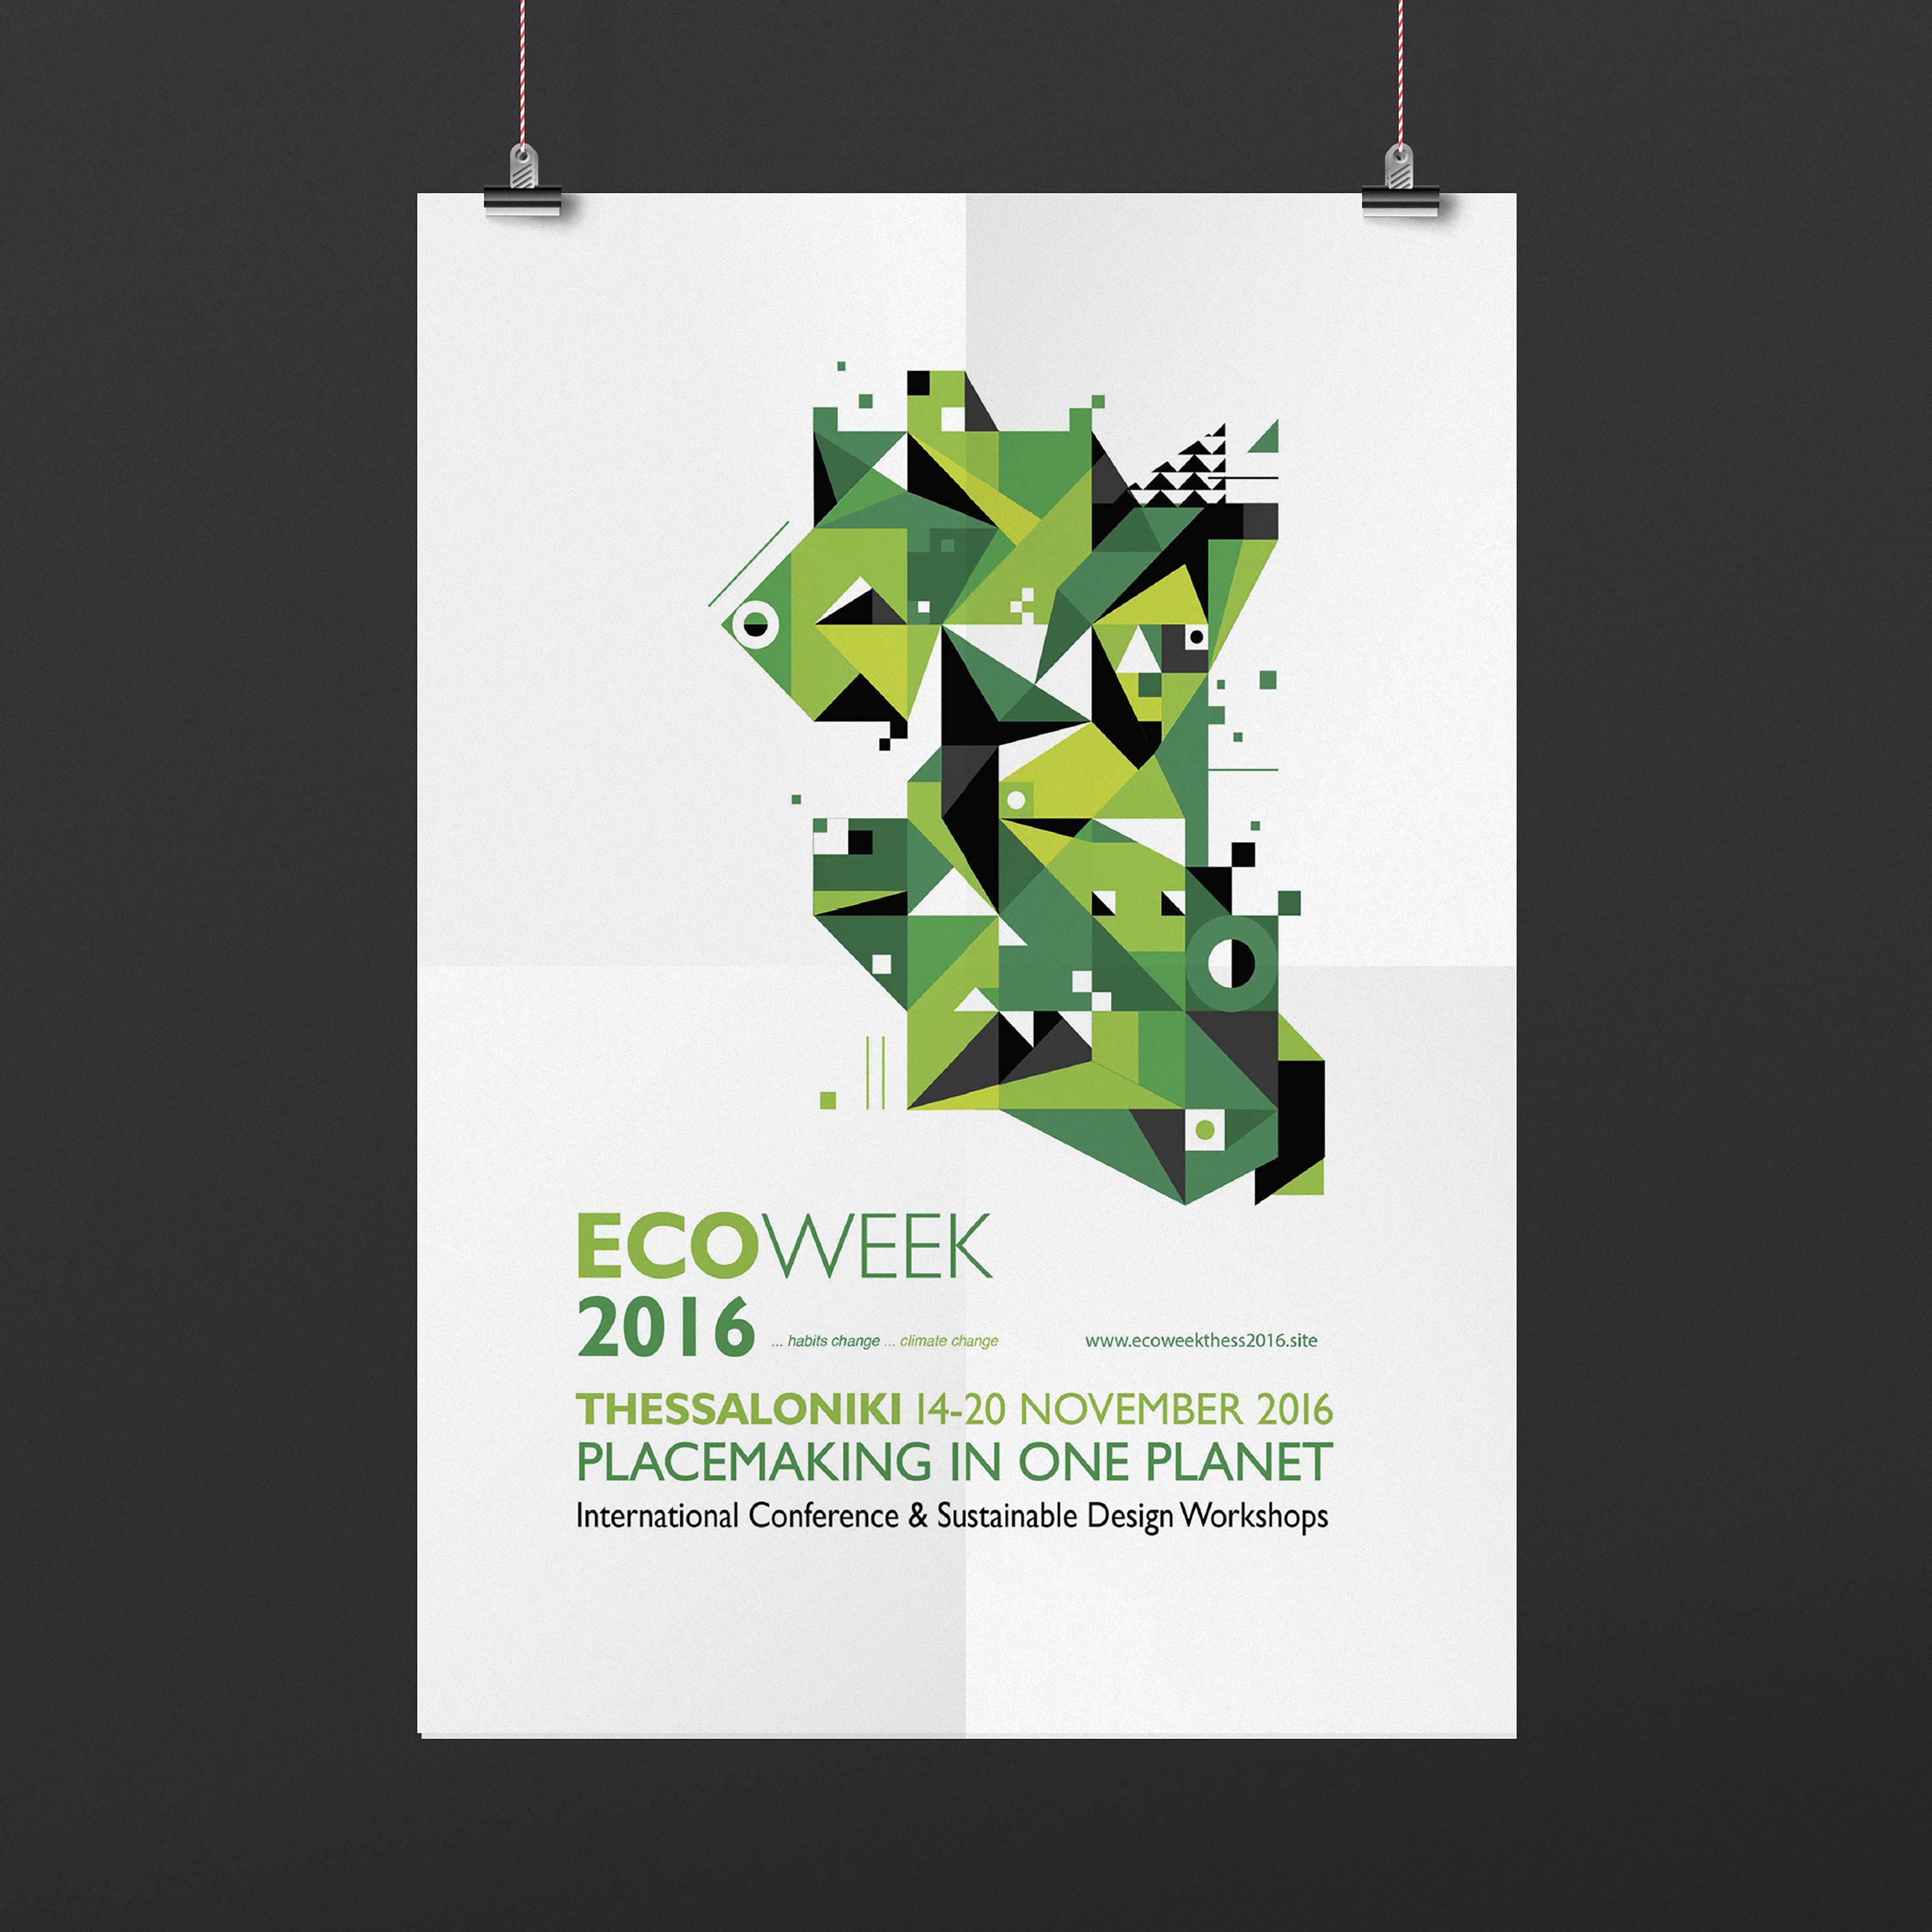 Fani Batzaki - Ecoweek Project